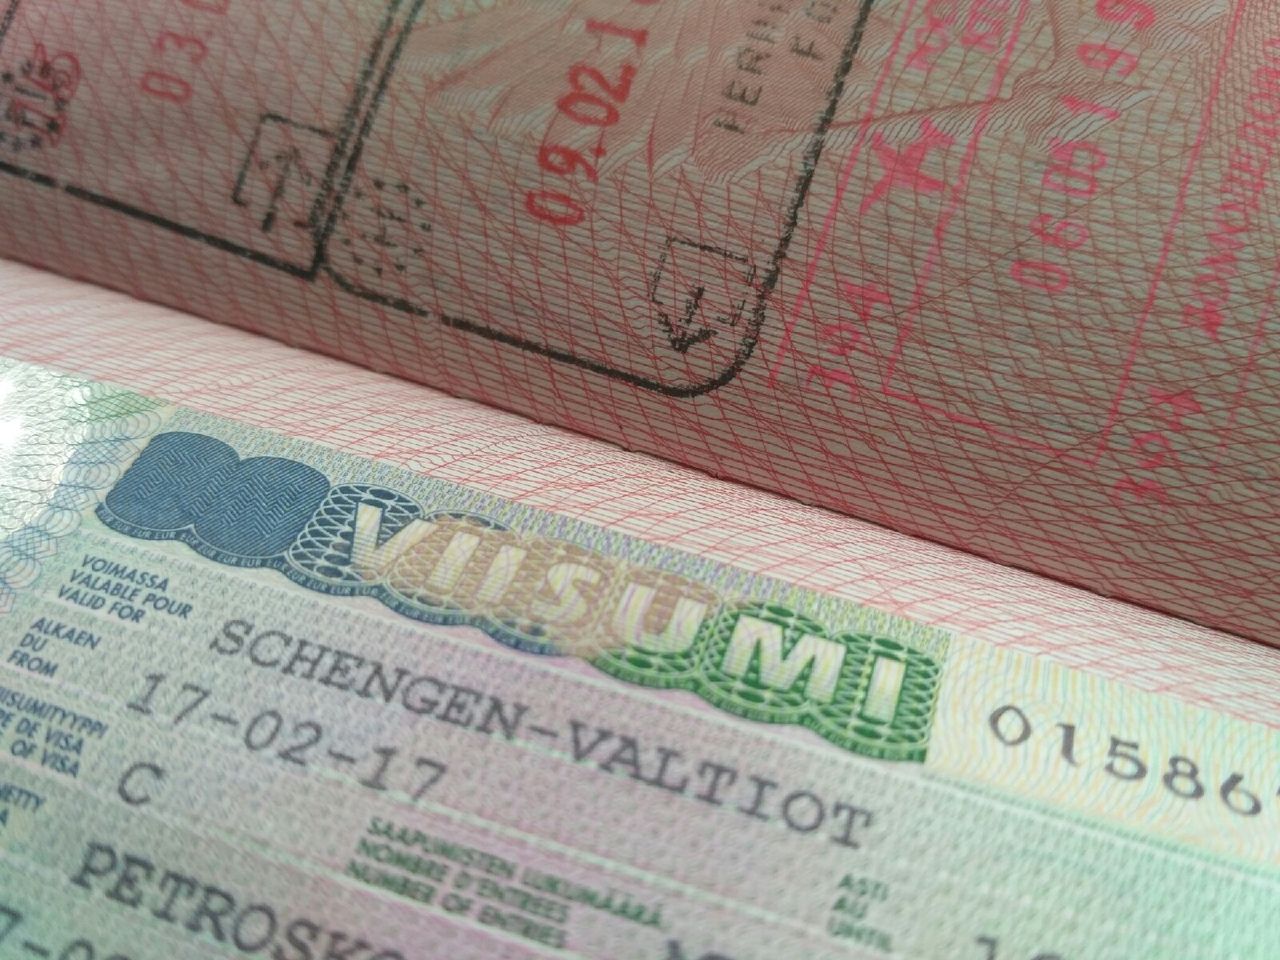 Tällä hetkellä viisuminhakijoiden suurin ryhmä ovat taas kansainvälisen rahdin kuljettajat. Kuva: Karjalan Sanomat